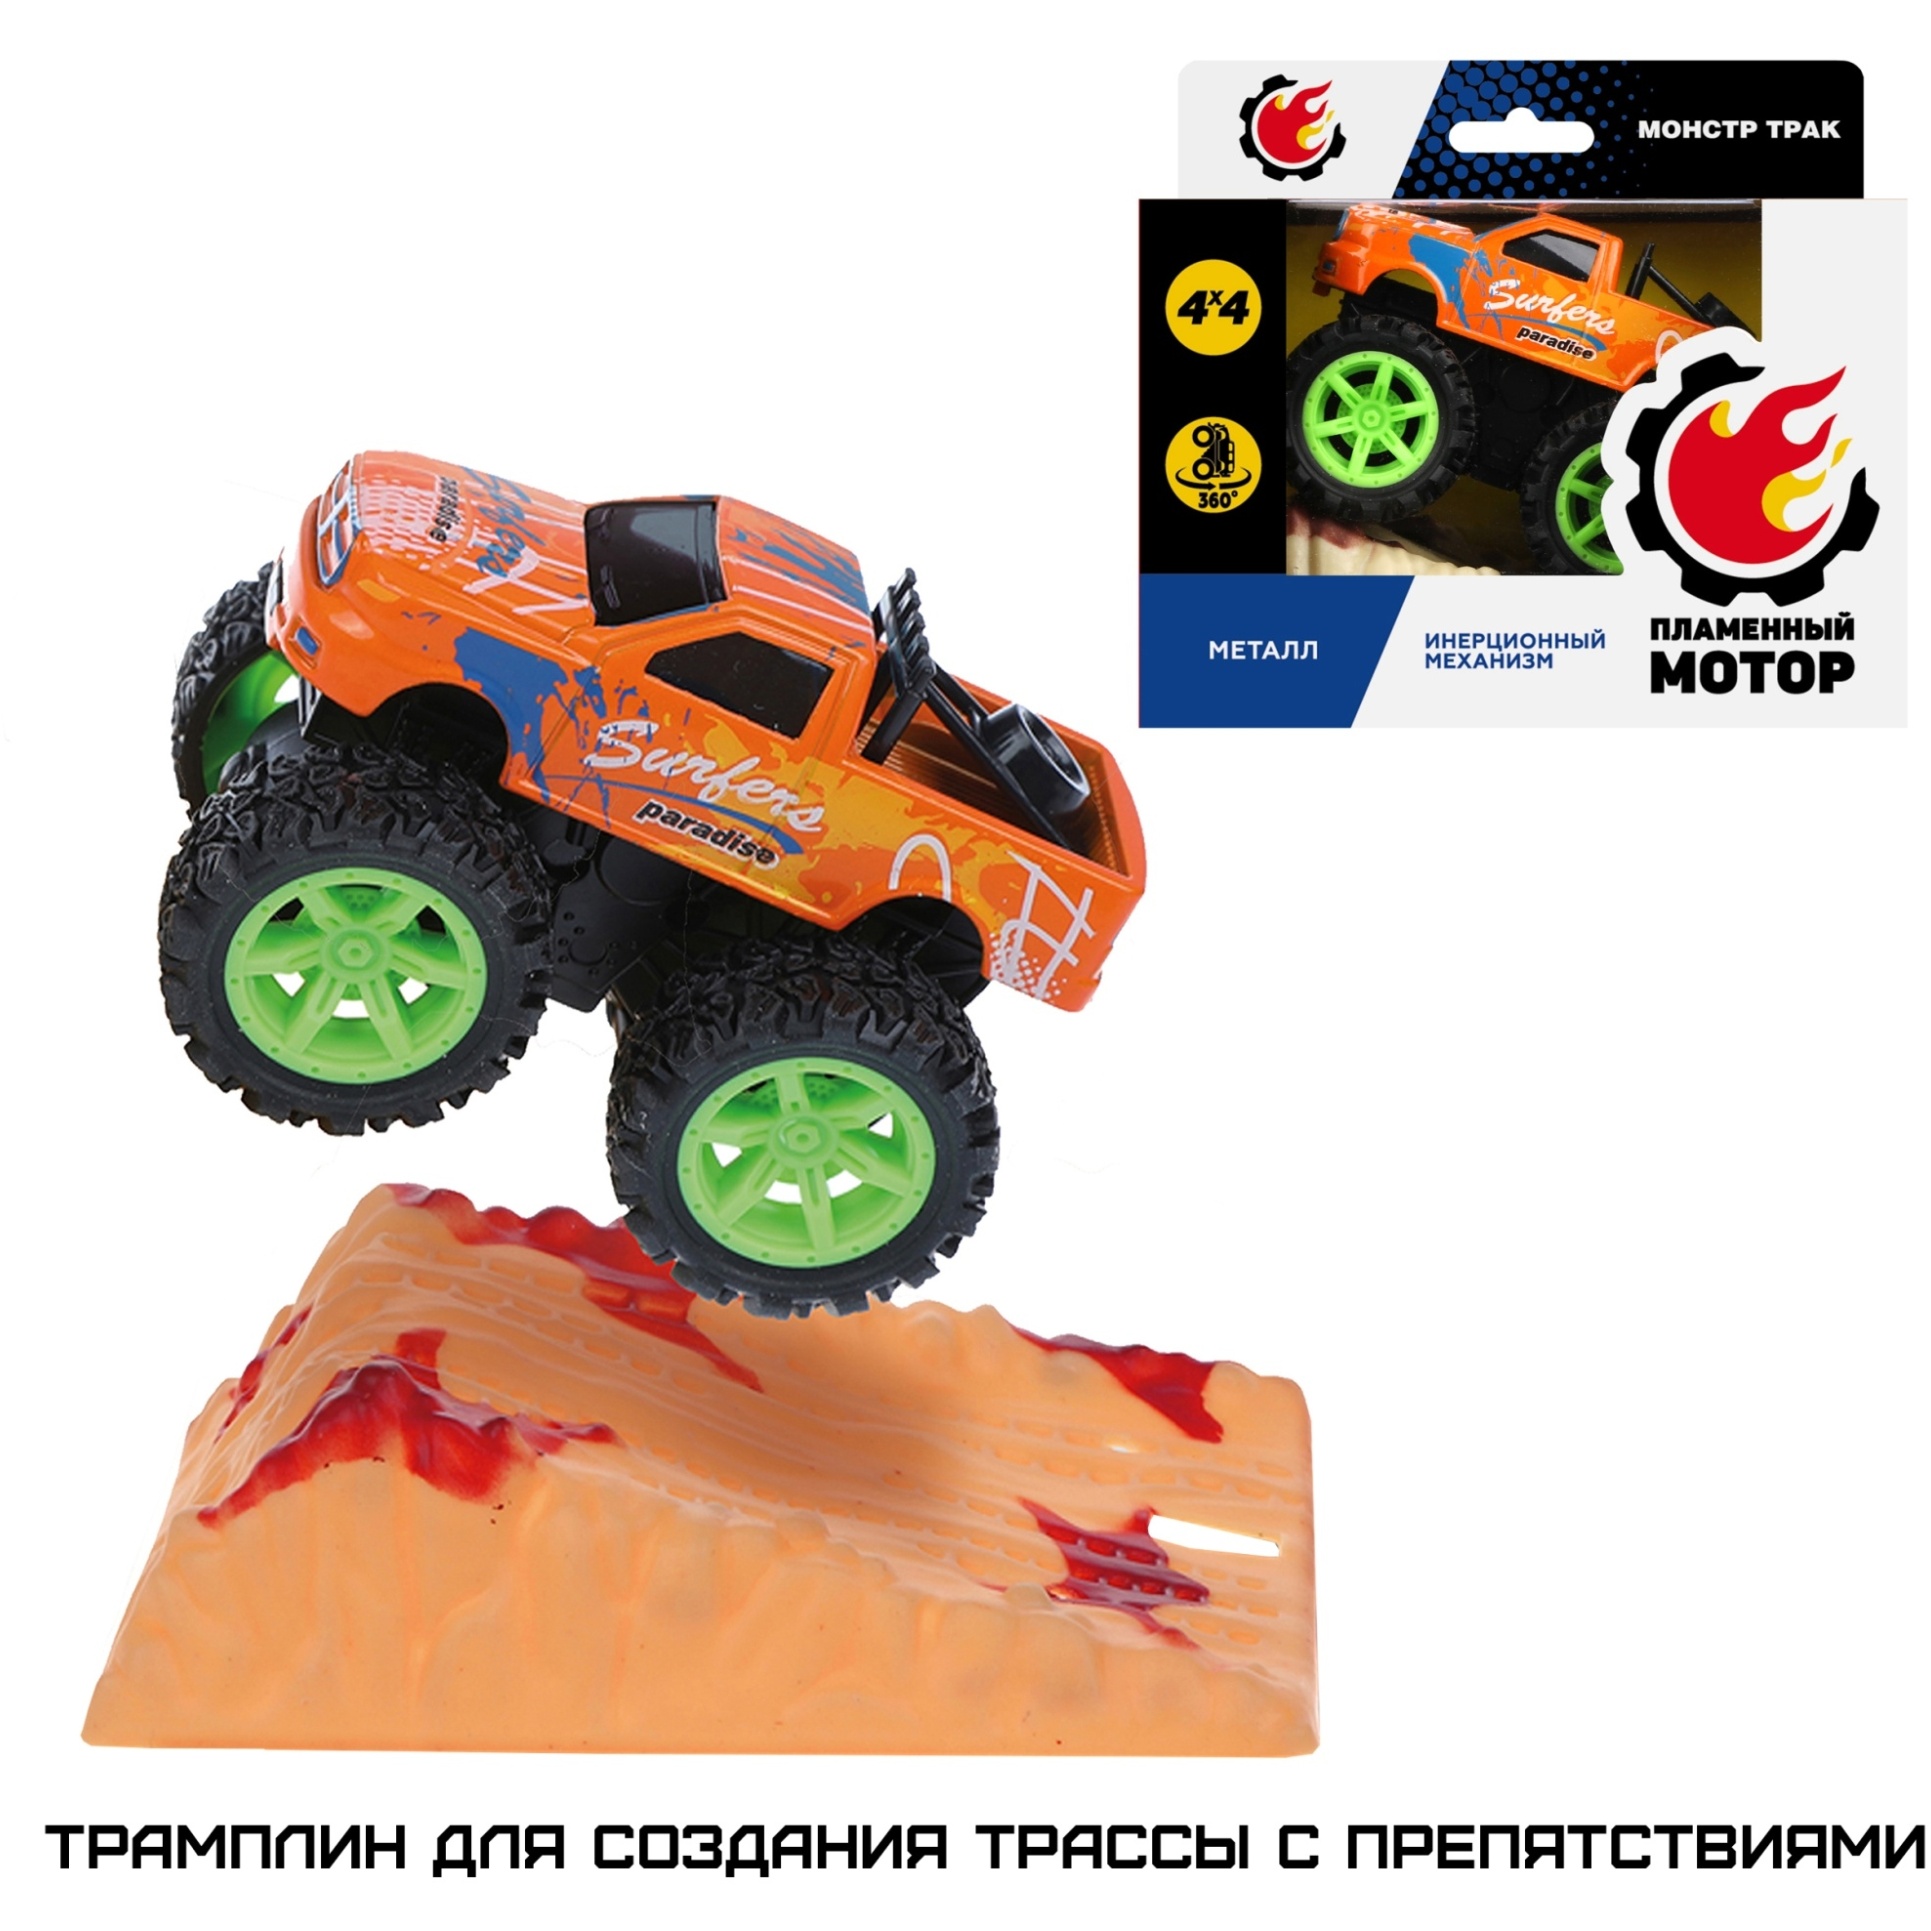 Машина "Монстр трак" (вращение на задних колесах, оранжевый, 7х6 см)